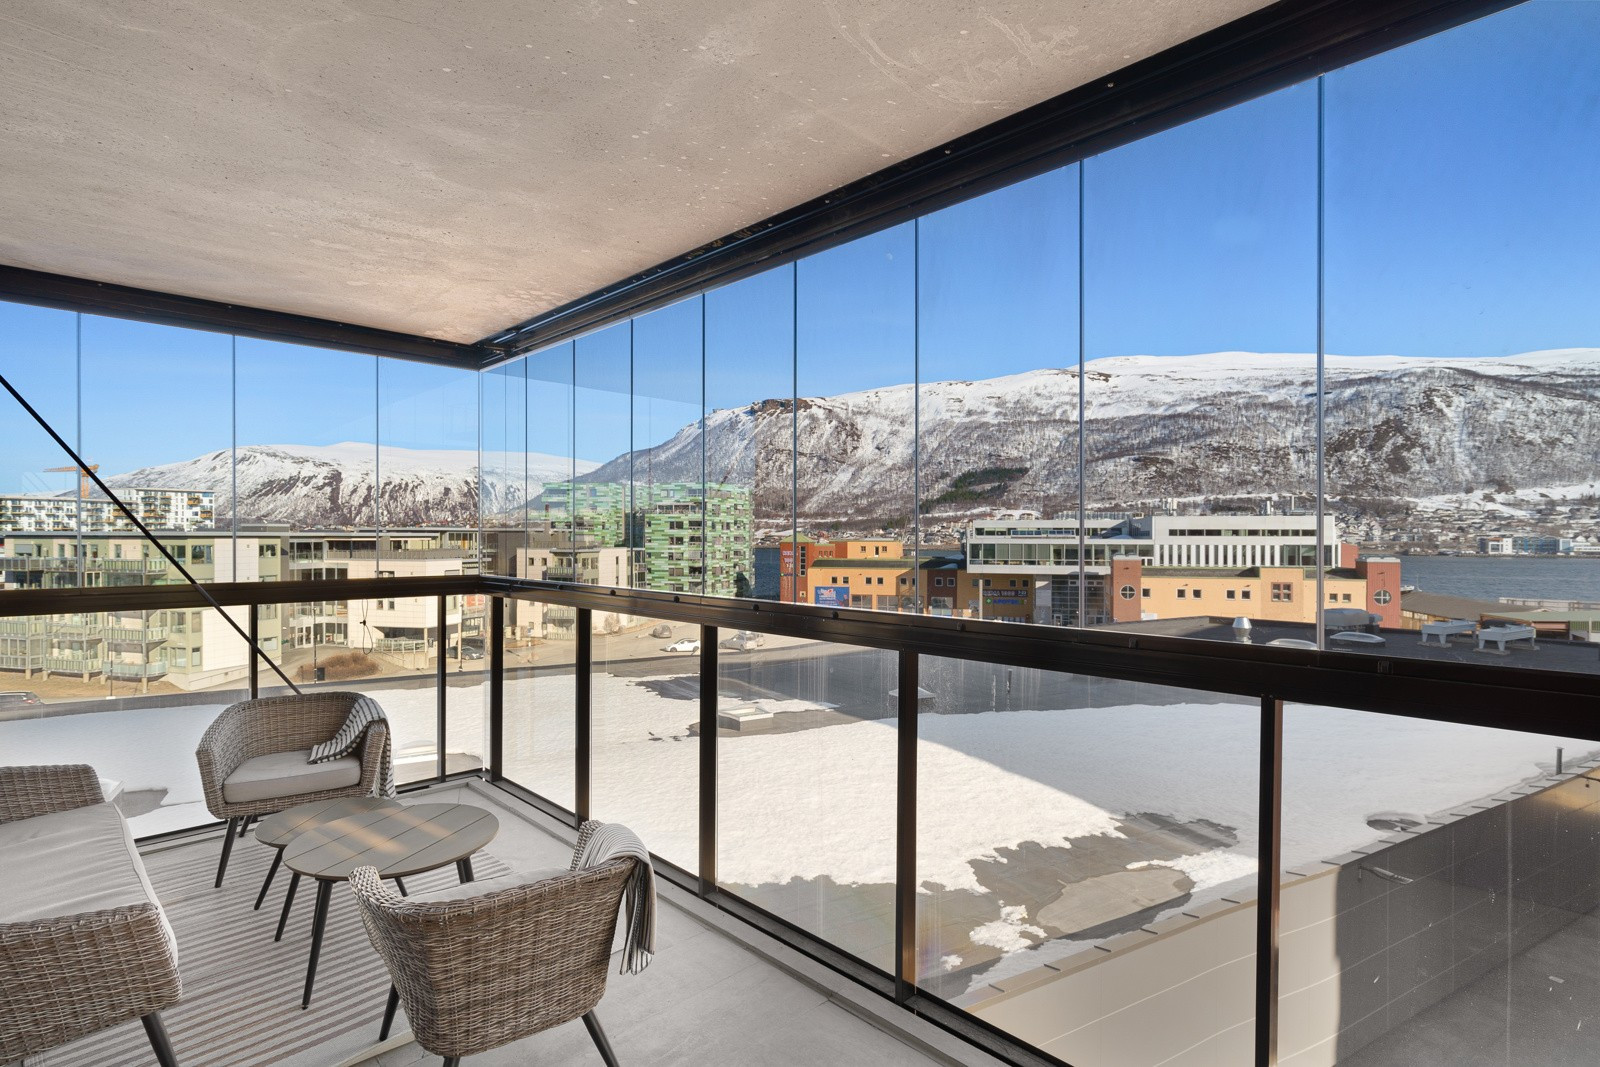 Rålekker 3-roms leilighet på Sjøkanten Park fra 2022 presentert av Robin. C. Lund!